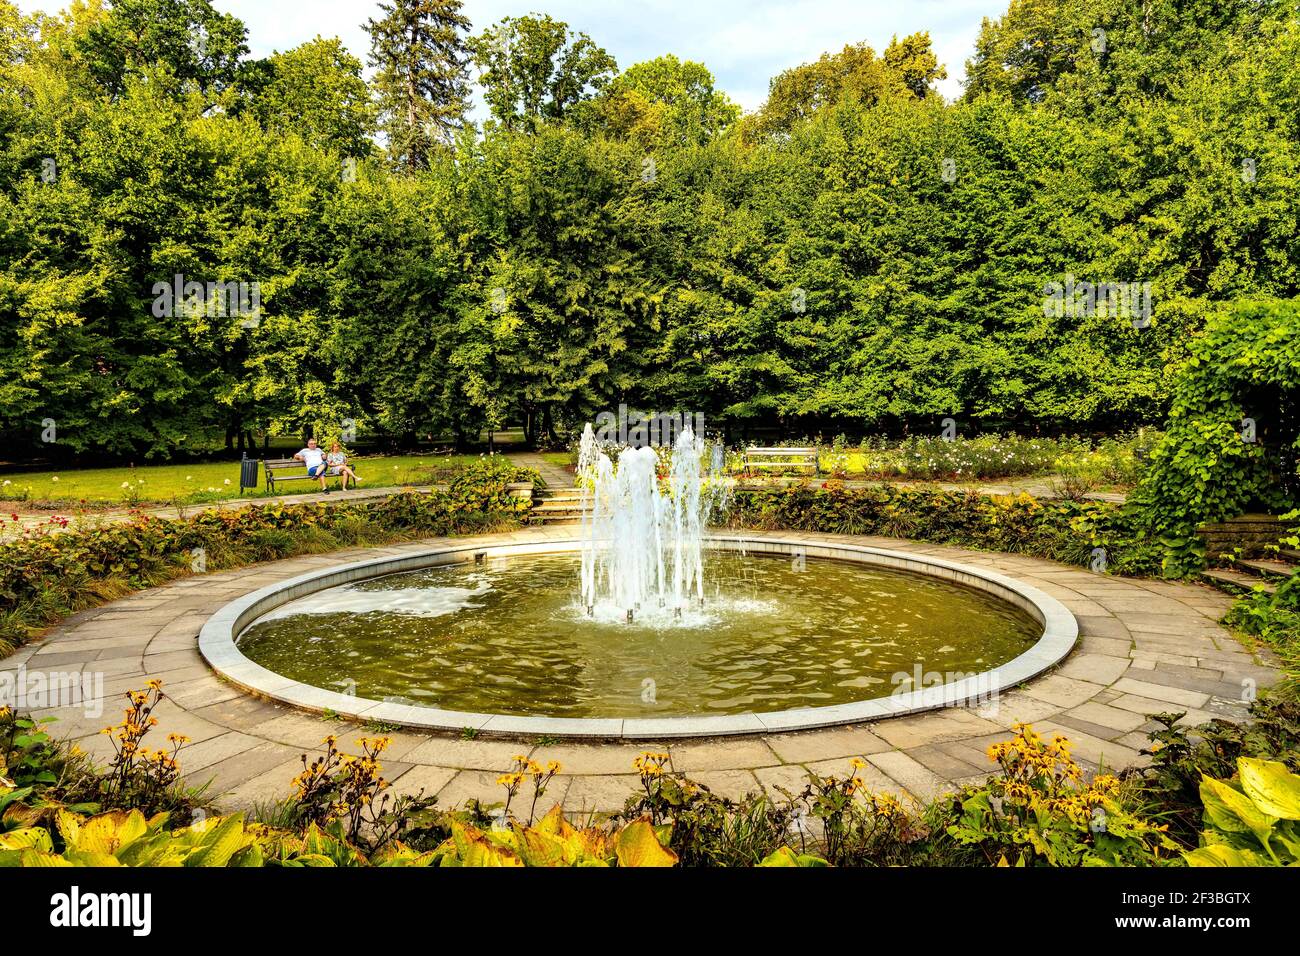 Zywiec, Polonia - 30 de agosto de 2020: Obras de agua neo-renacentista en el histórico parque Zywiec que rodea el castillo y el palacio de los Habsburgo en el centro de la ciudad vieja i Foto de stock